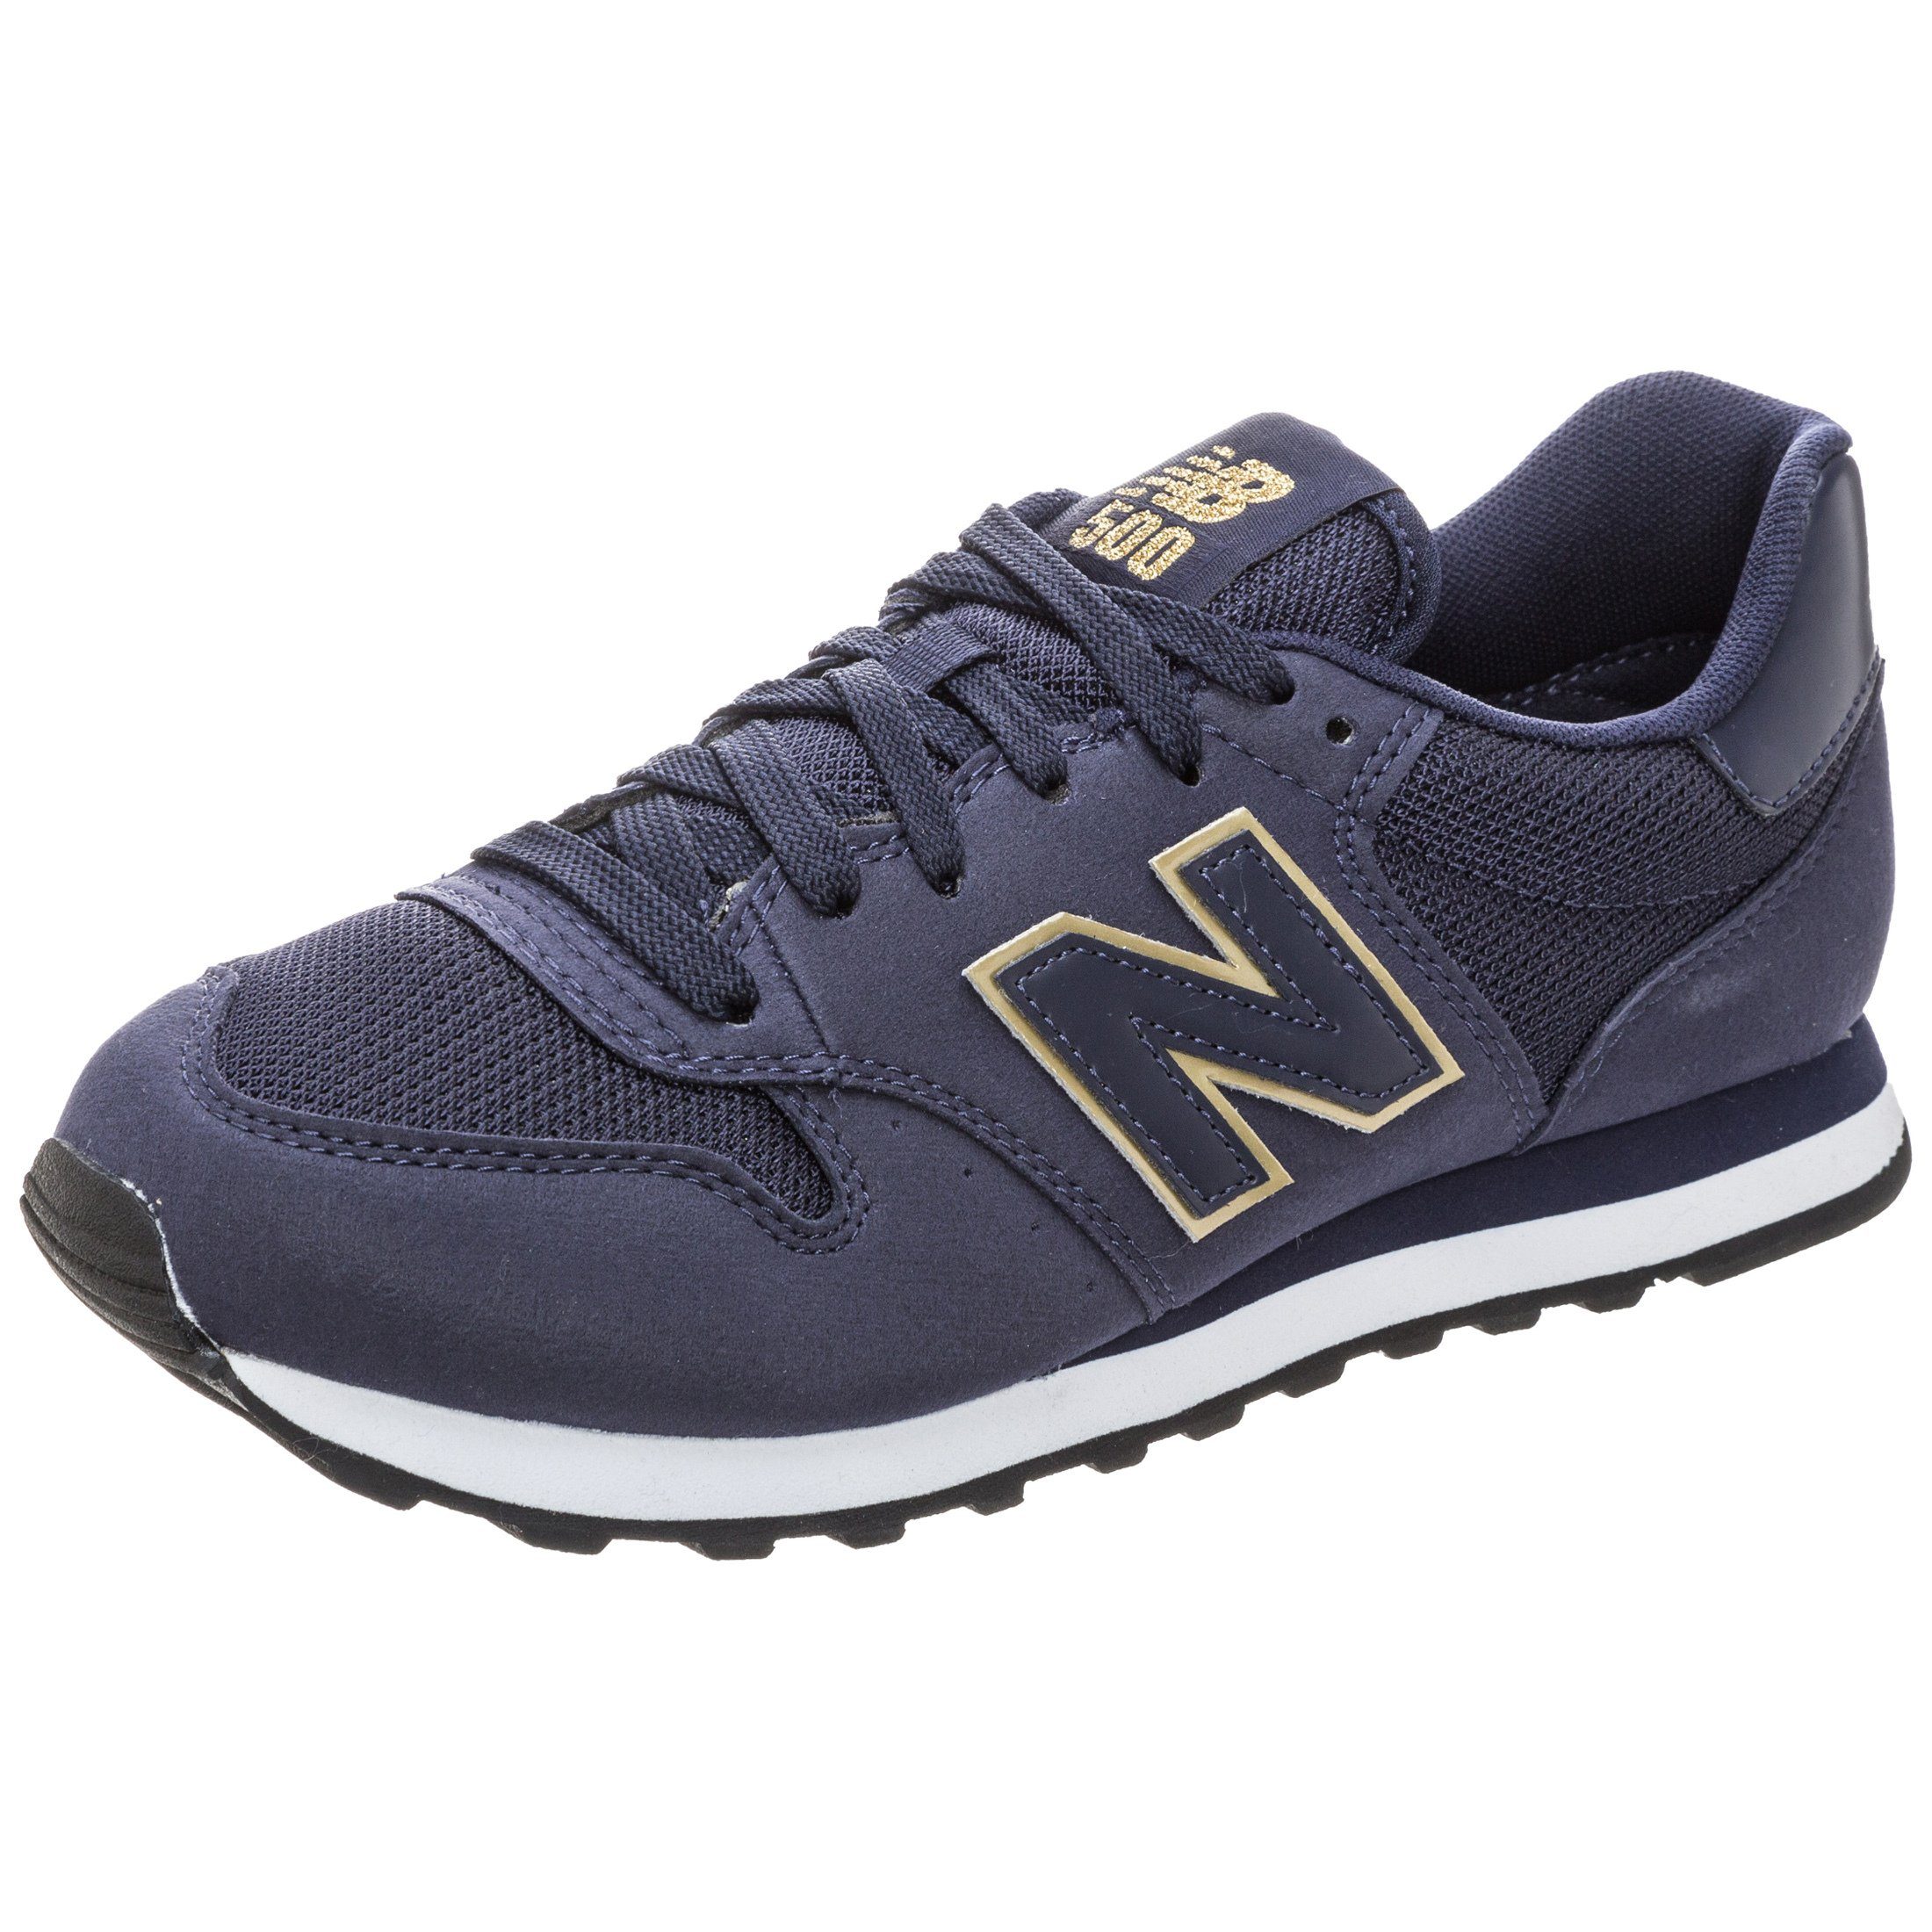 New Balance »Gw500-Ngn-B« Sneaker, Hochwertig verarbeitetes Obermaterial  online kaufen | OTTO